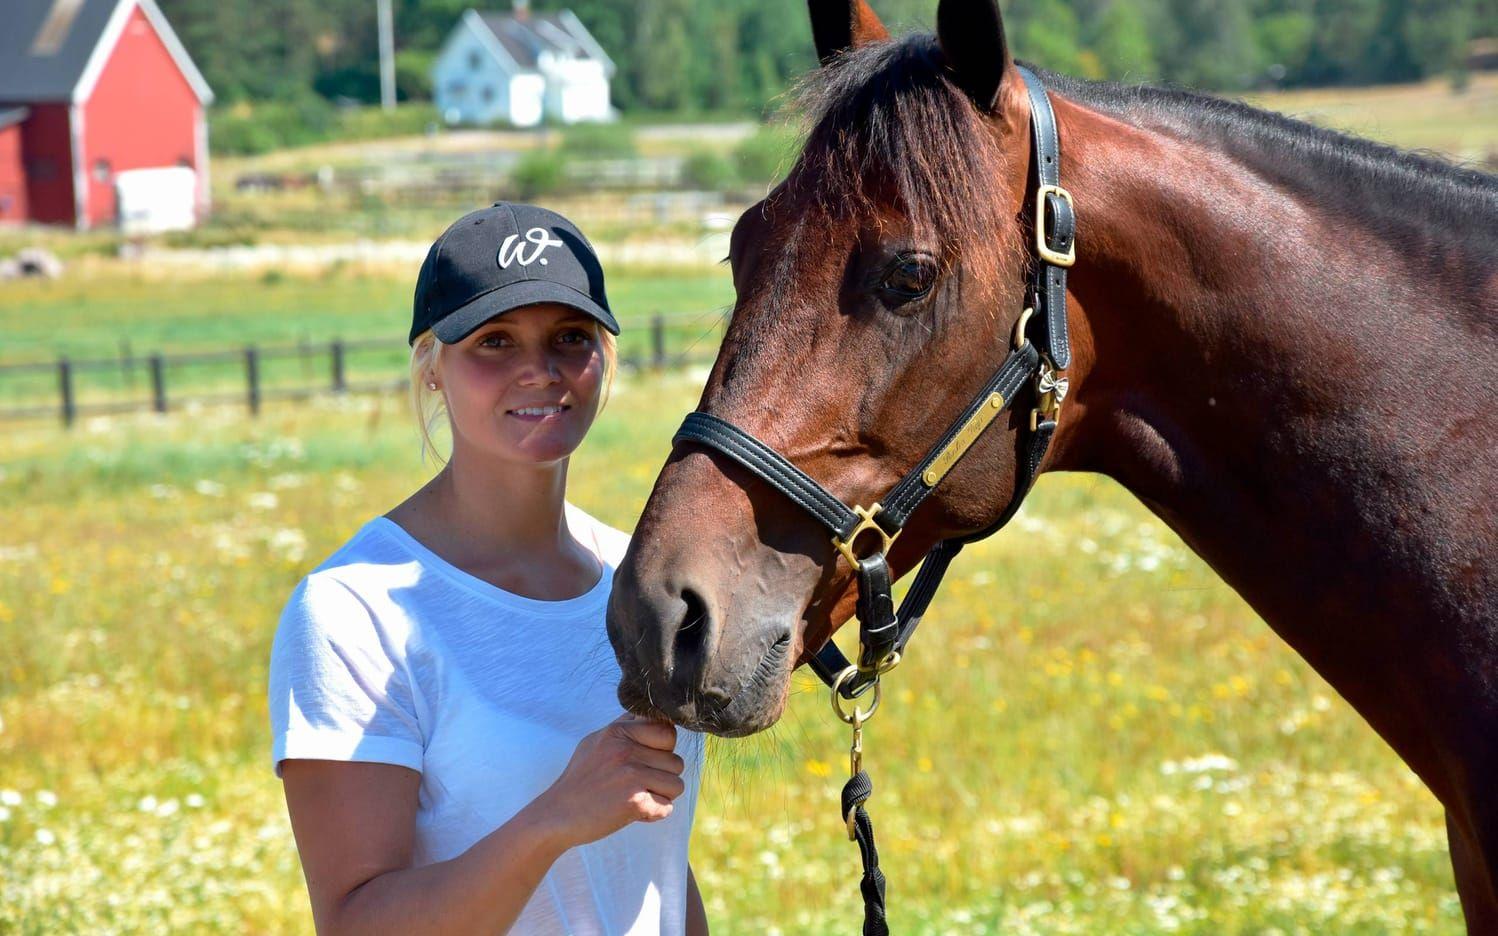 Maria Törnqvist betraktas som ett lovande tränarämne och har tilldelats Joakim Sandkvist Stipendium, som premierar unga framtidslöften inom travsporten. För tillfället har hon runt 25 hästar i träning. Bild: Jan Larsson